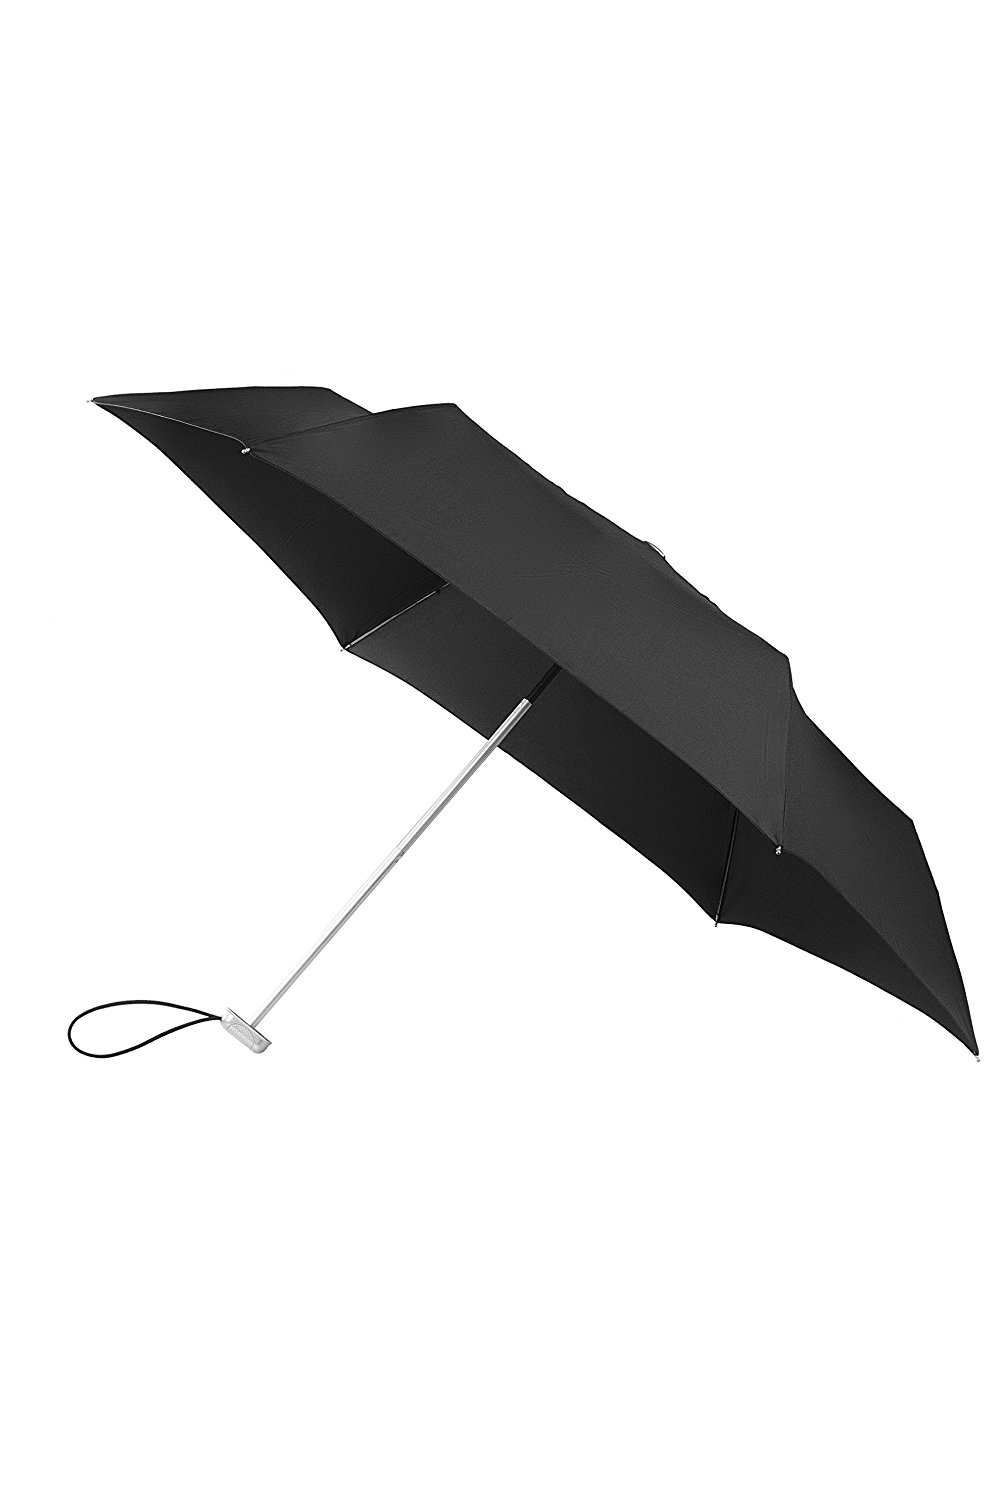 Alu Drop Regenschirm Manual in Schwarz von Samsonite